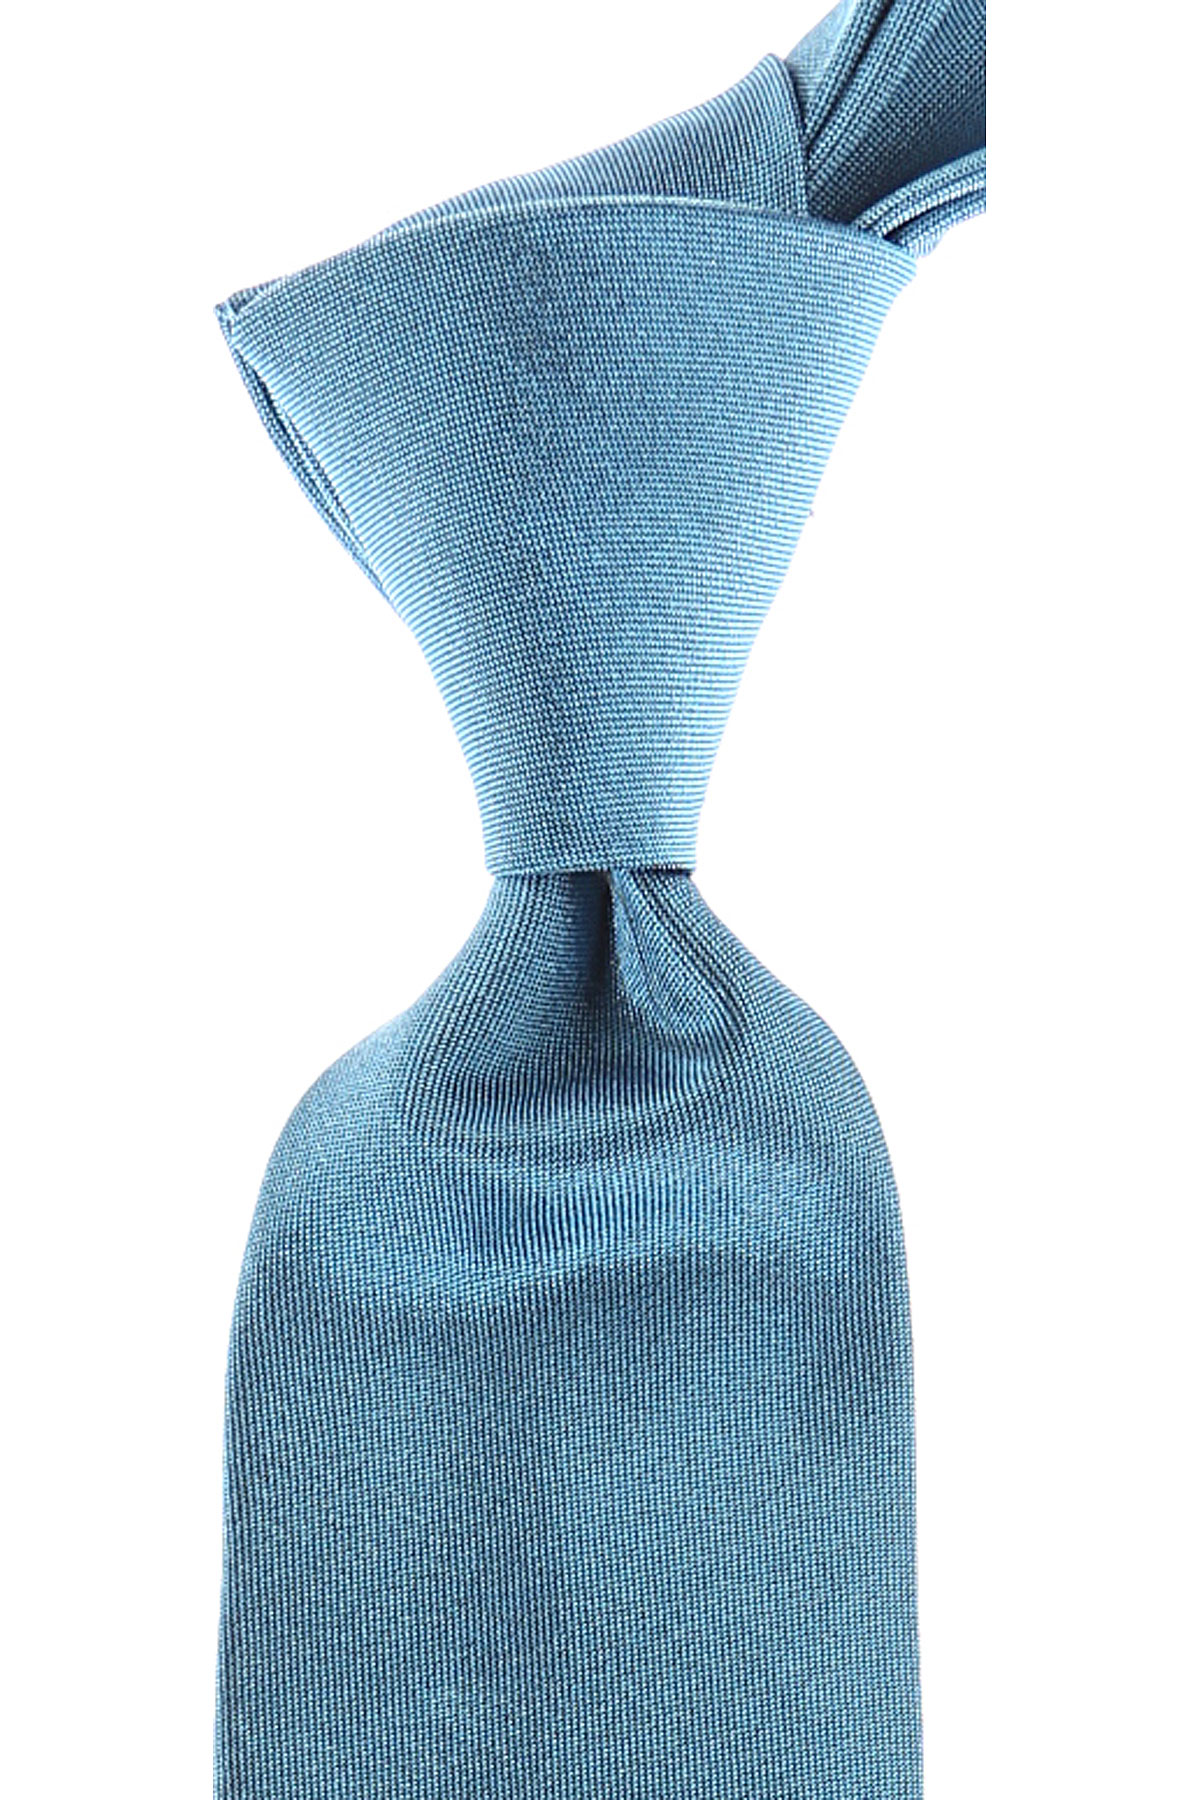 Cravates Vivienne Westwood , Bleu ciel clair, Soie, 2017